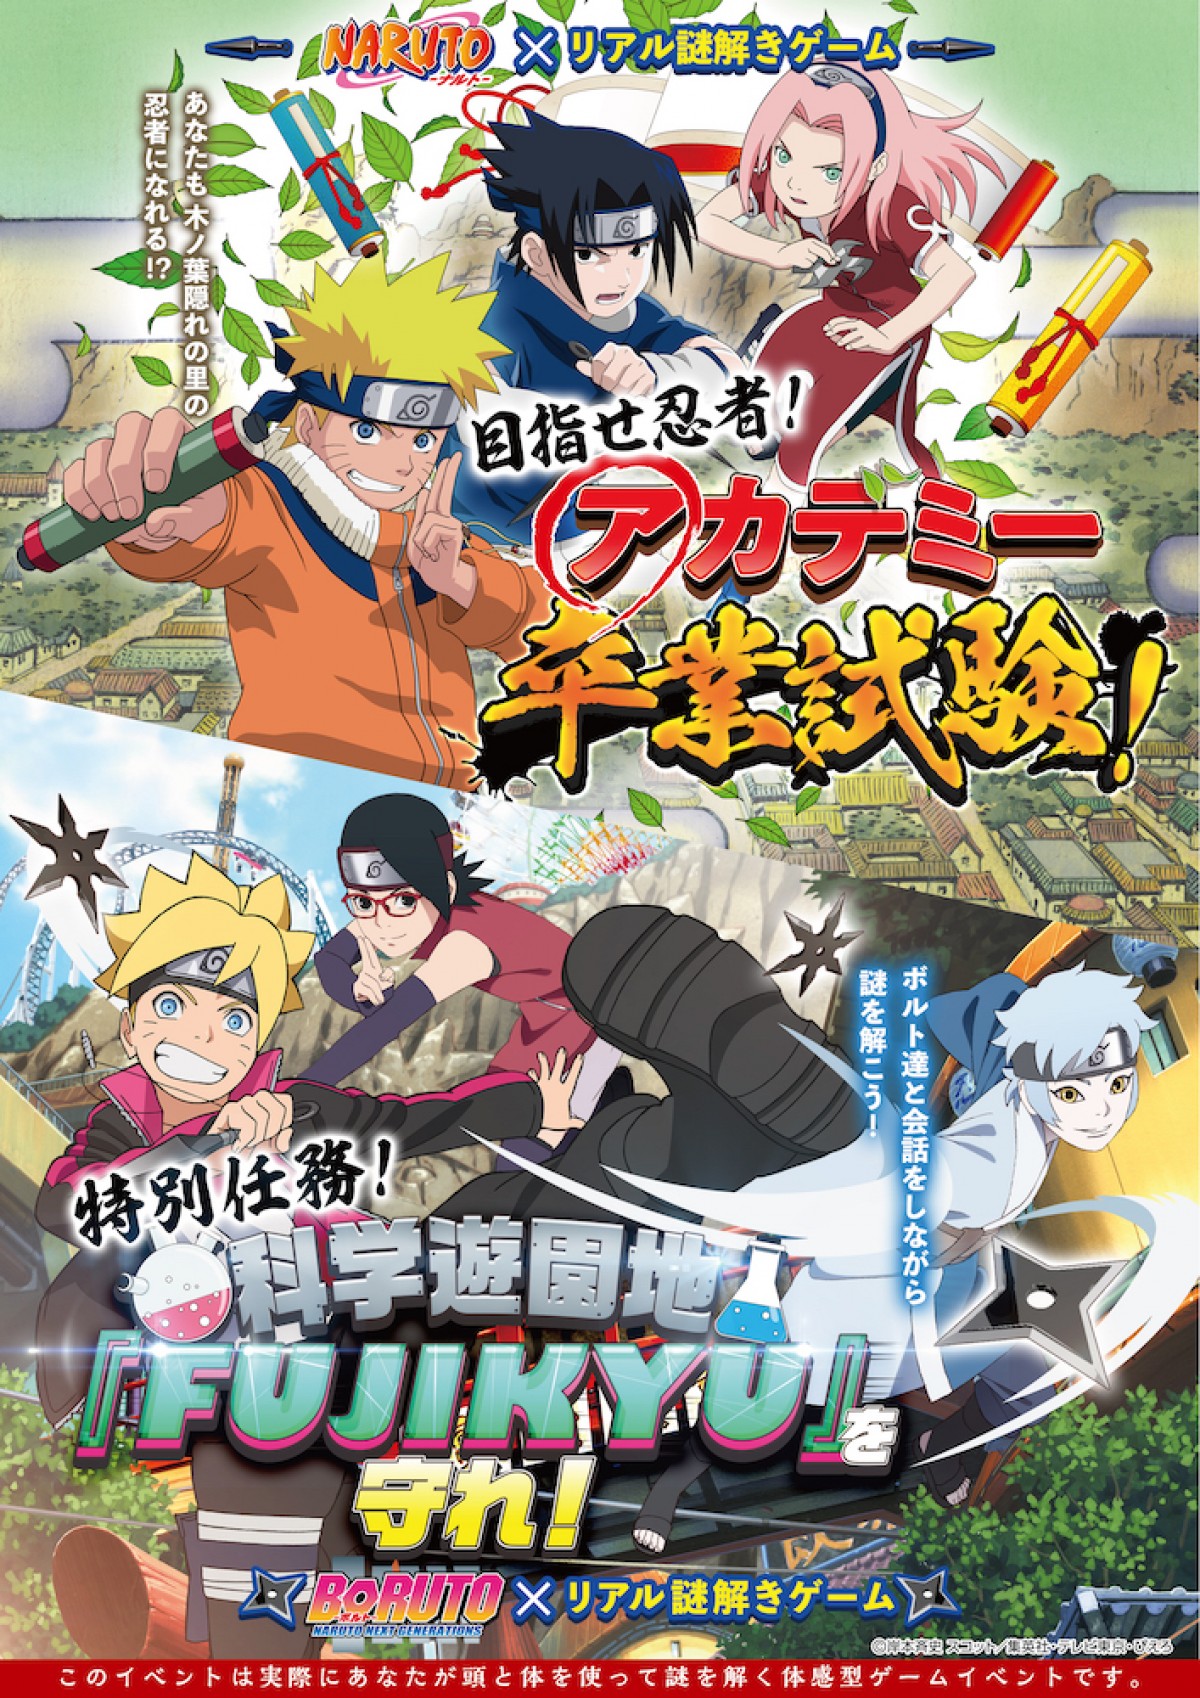 Naruto Boruto リアル謎解きゲーム 7 26から富士急で開催 19年7月24日 イベント クランクイン トレンド